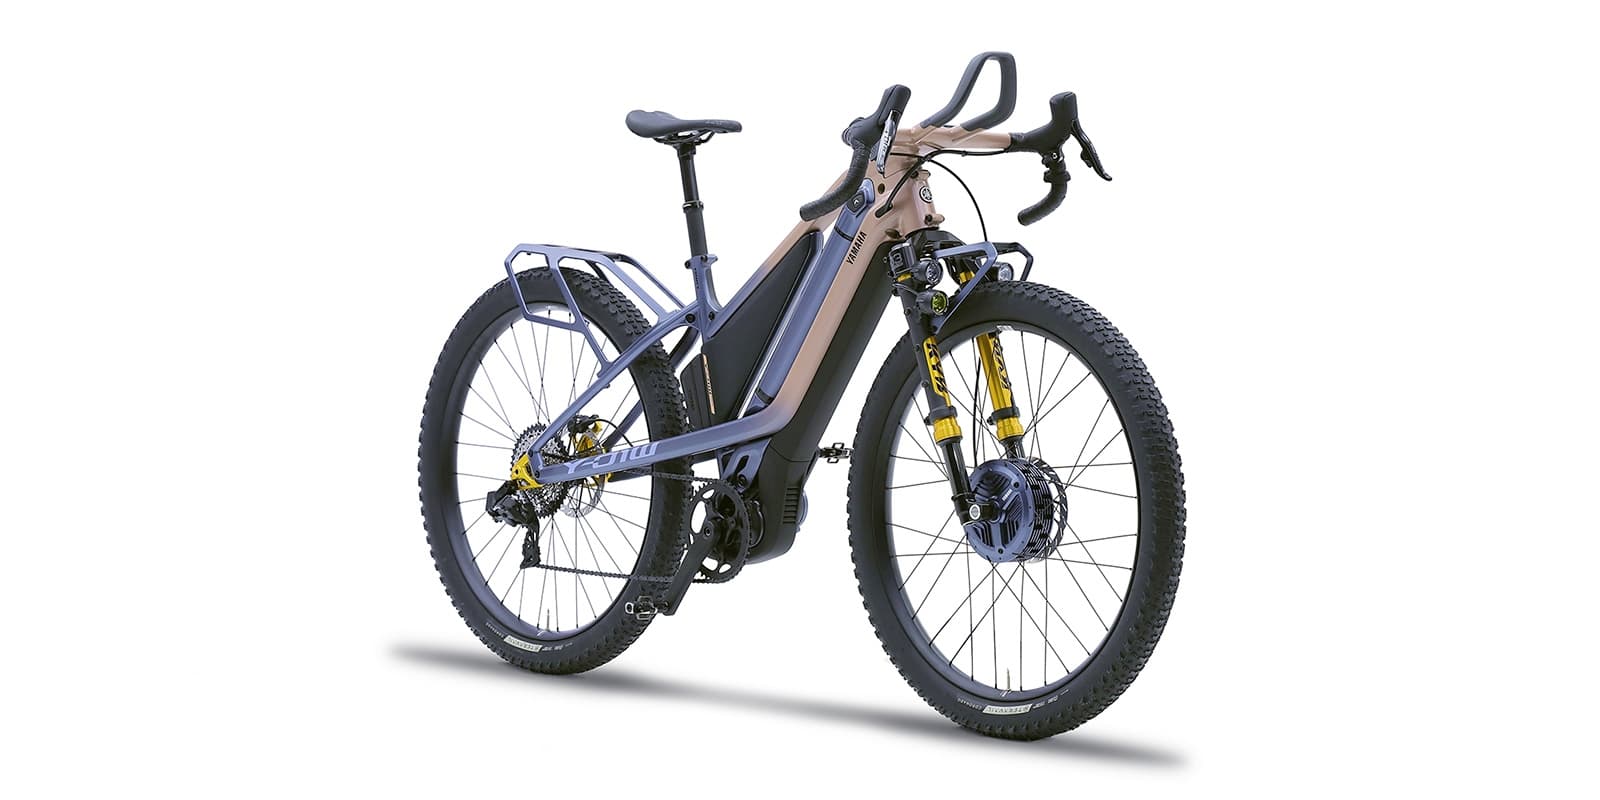 e-Pronto, Electric Cargo Bike